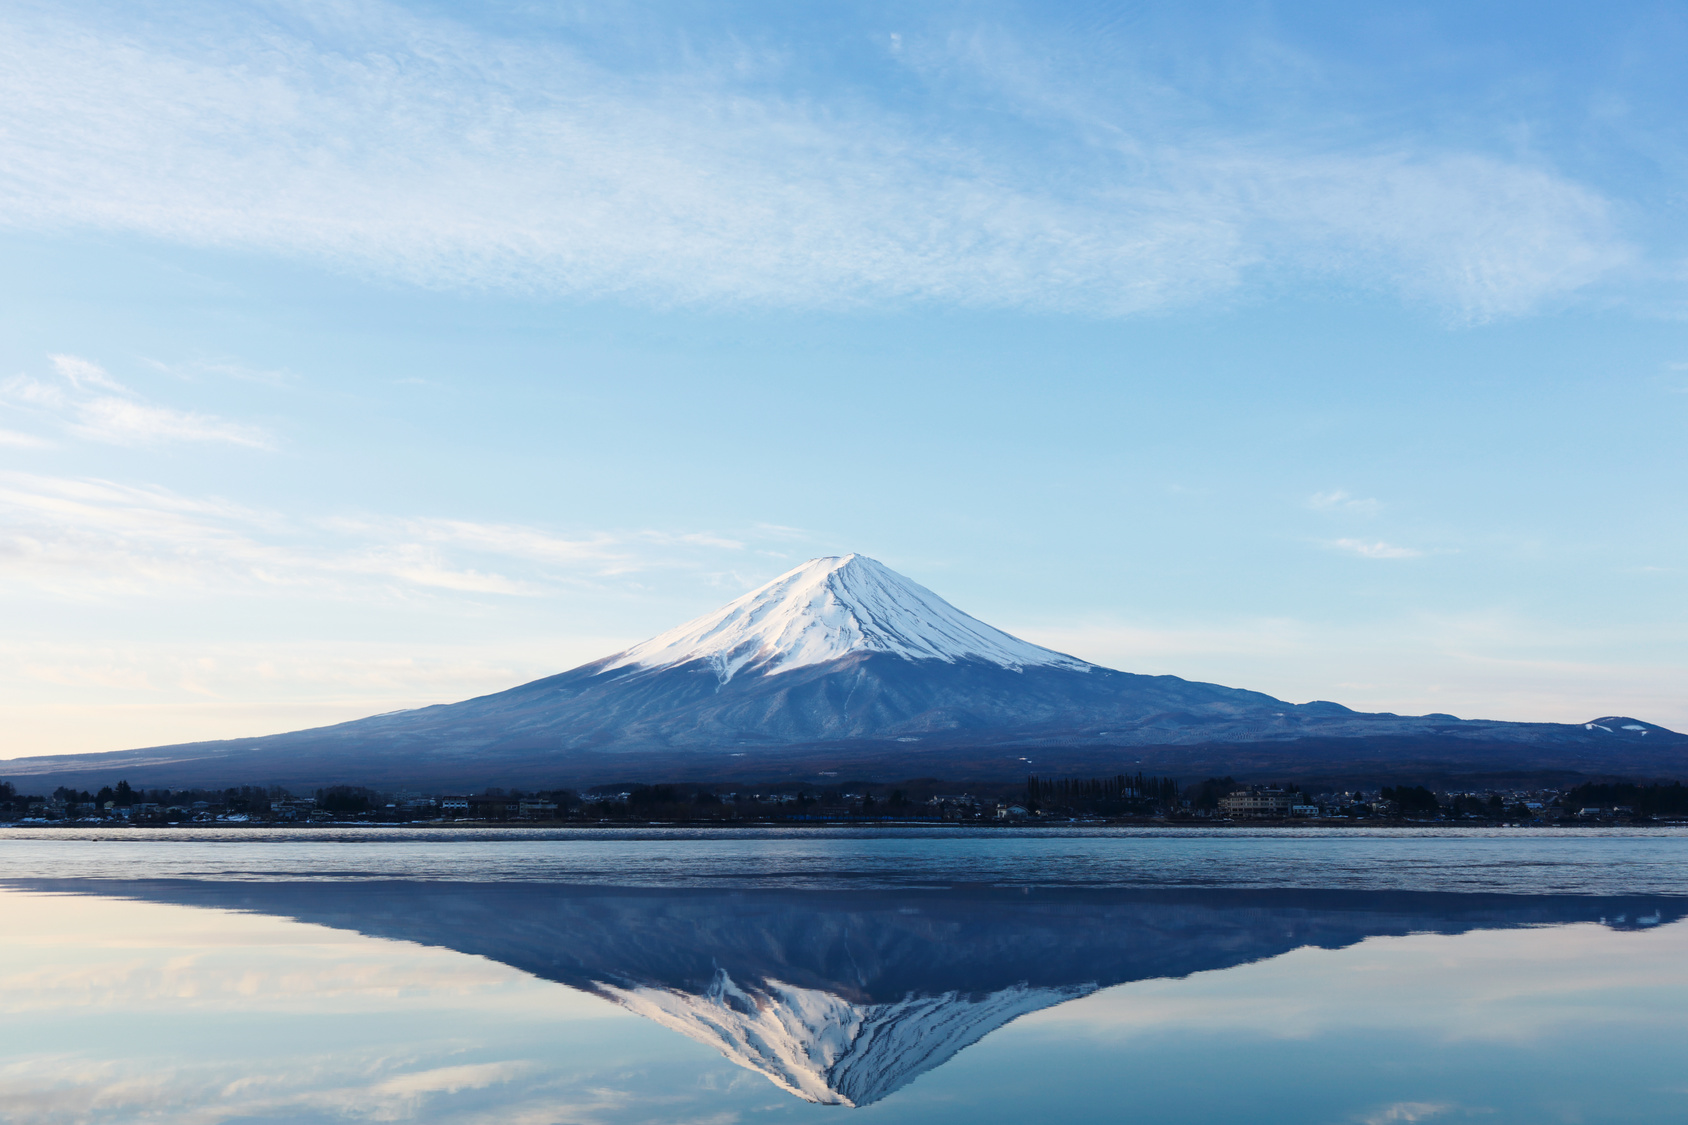 ない は では 日本 山 高い 一 富士山 かつては「日本一高い山」とされた 台湾の中心に聳える東アジア最高峰